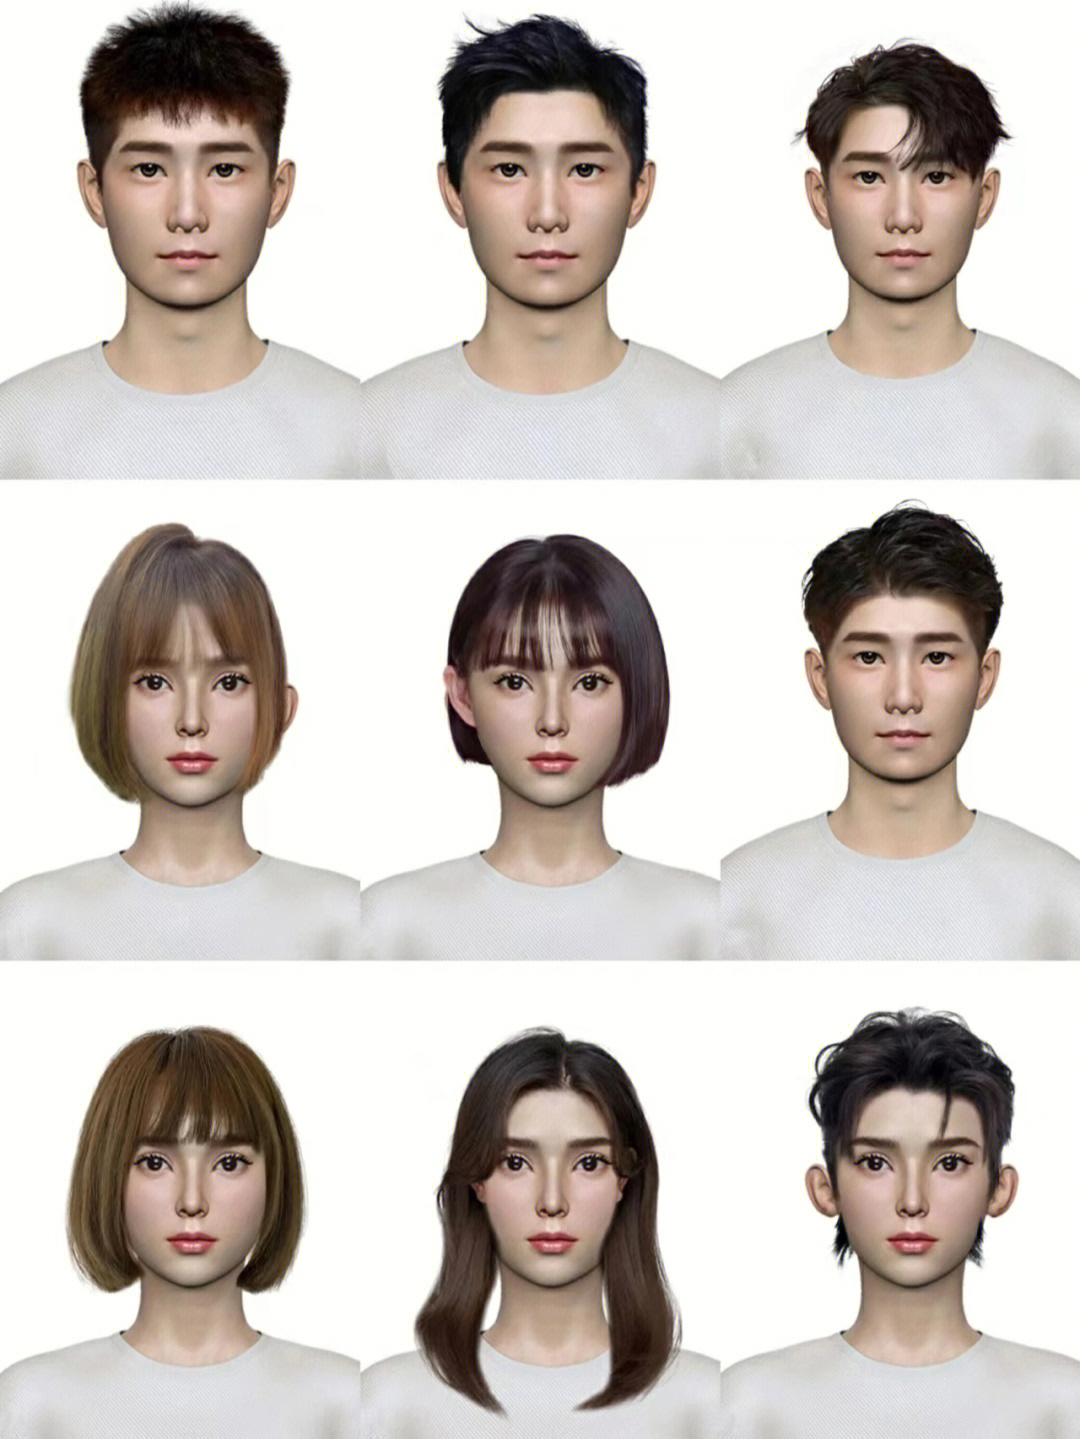 扫一扫测发型测试脸型测试发型设计